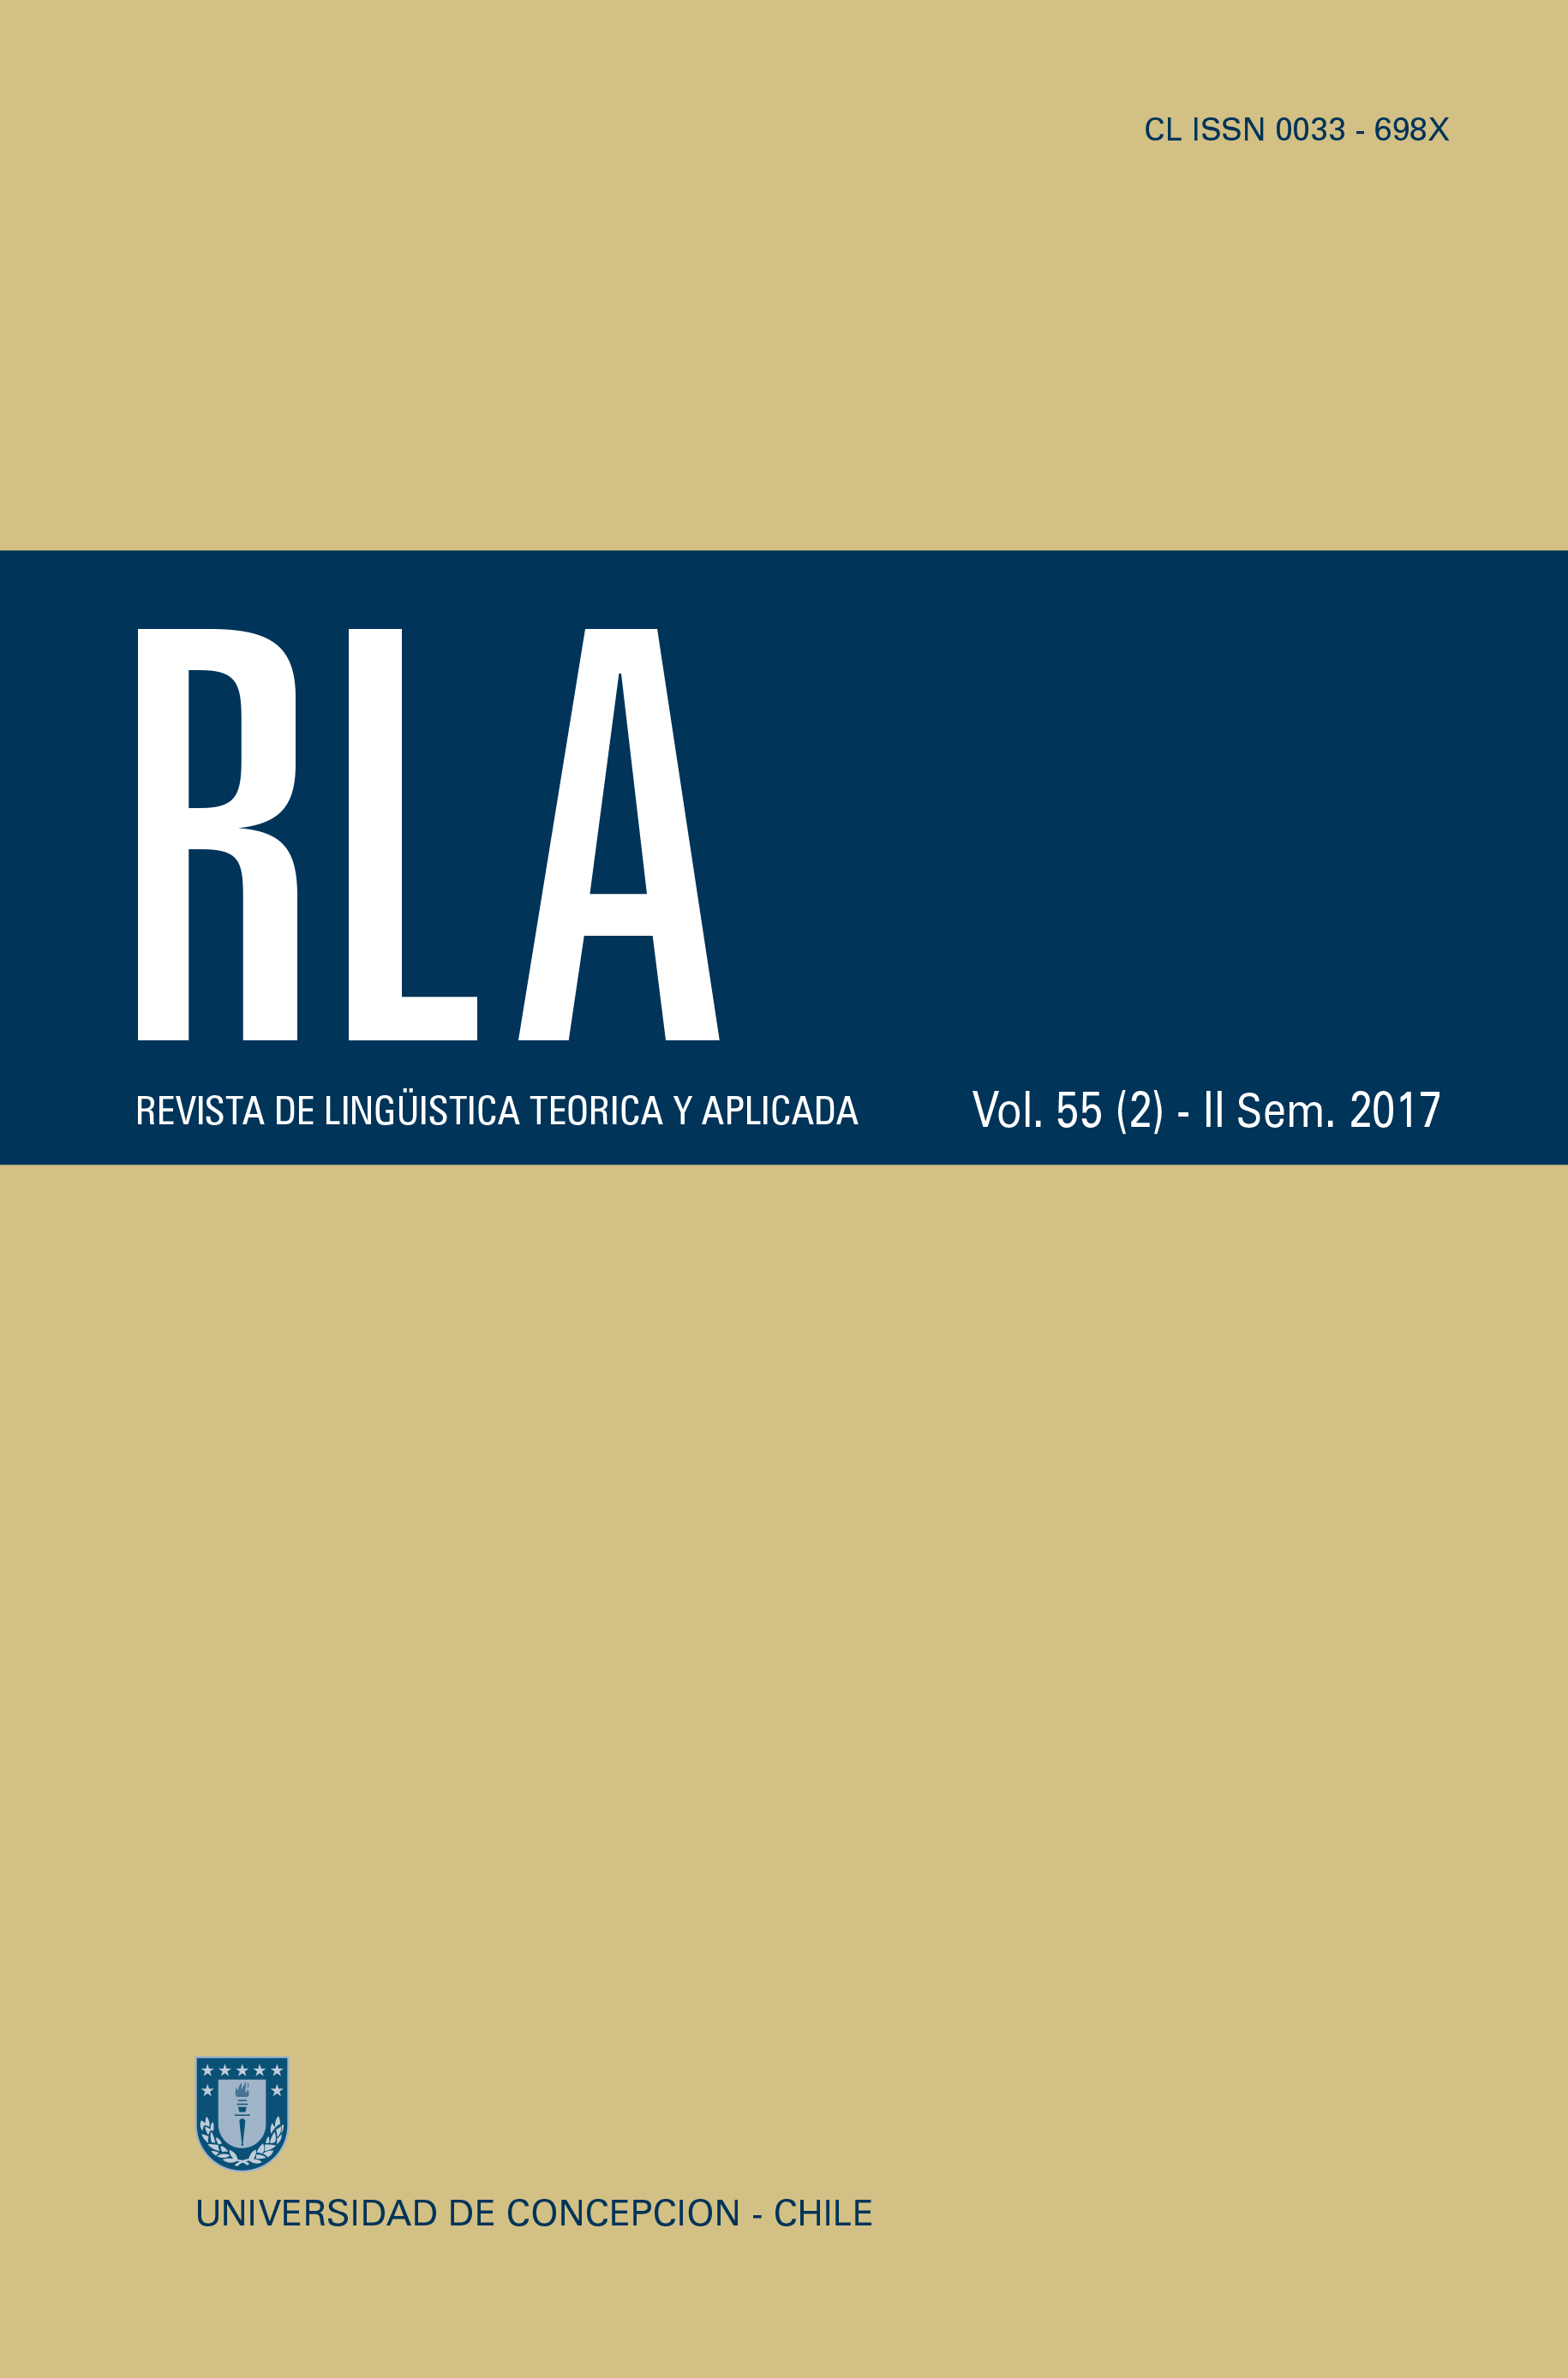 Revista de Linguística Teórica y Aplicada Vol. 56 N°2 (2017)